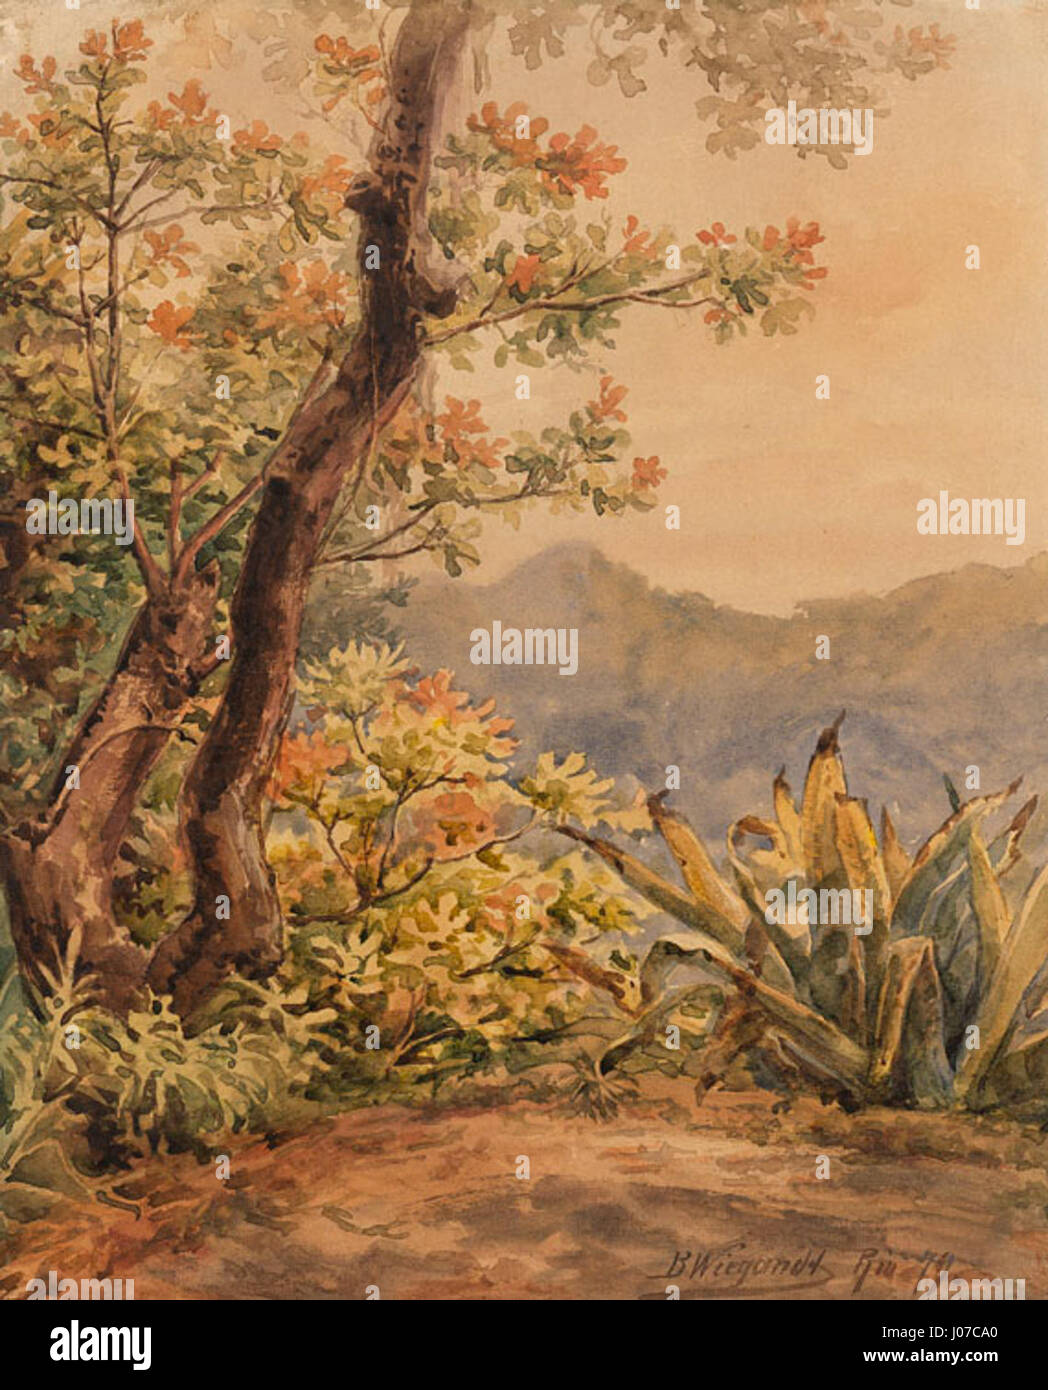 Bernhard Wiegandt, Brasilianische Landschaft mit Agave, Aquarell über Bleistift, 1879 Stock Photo